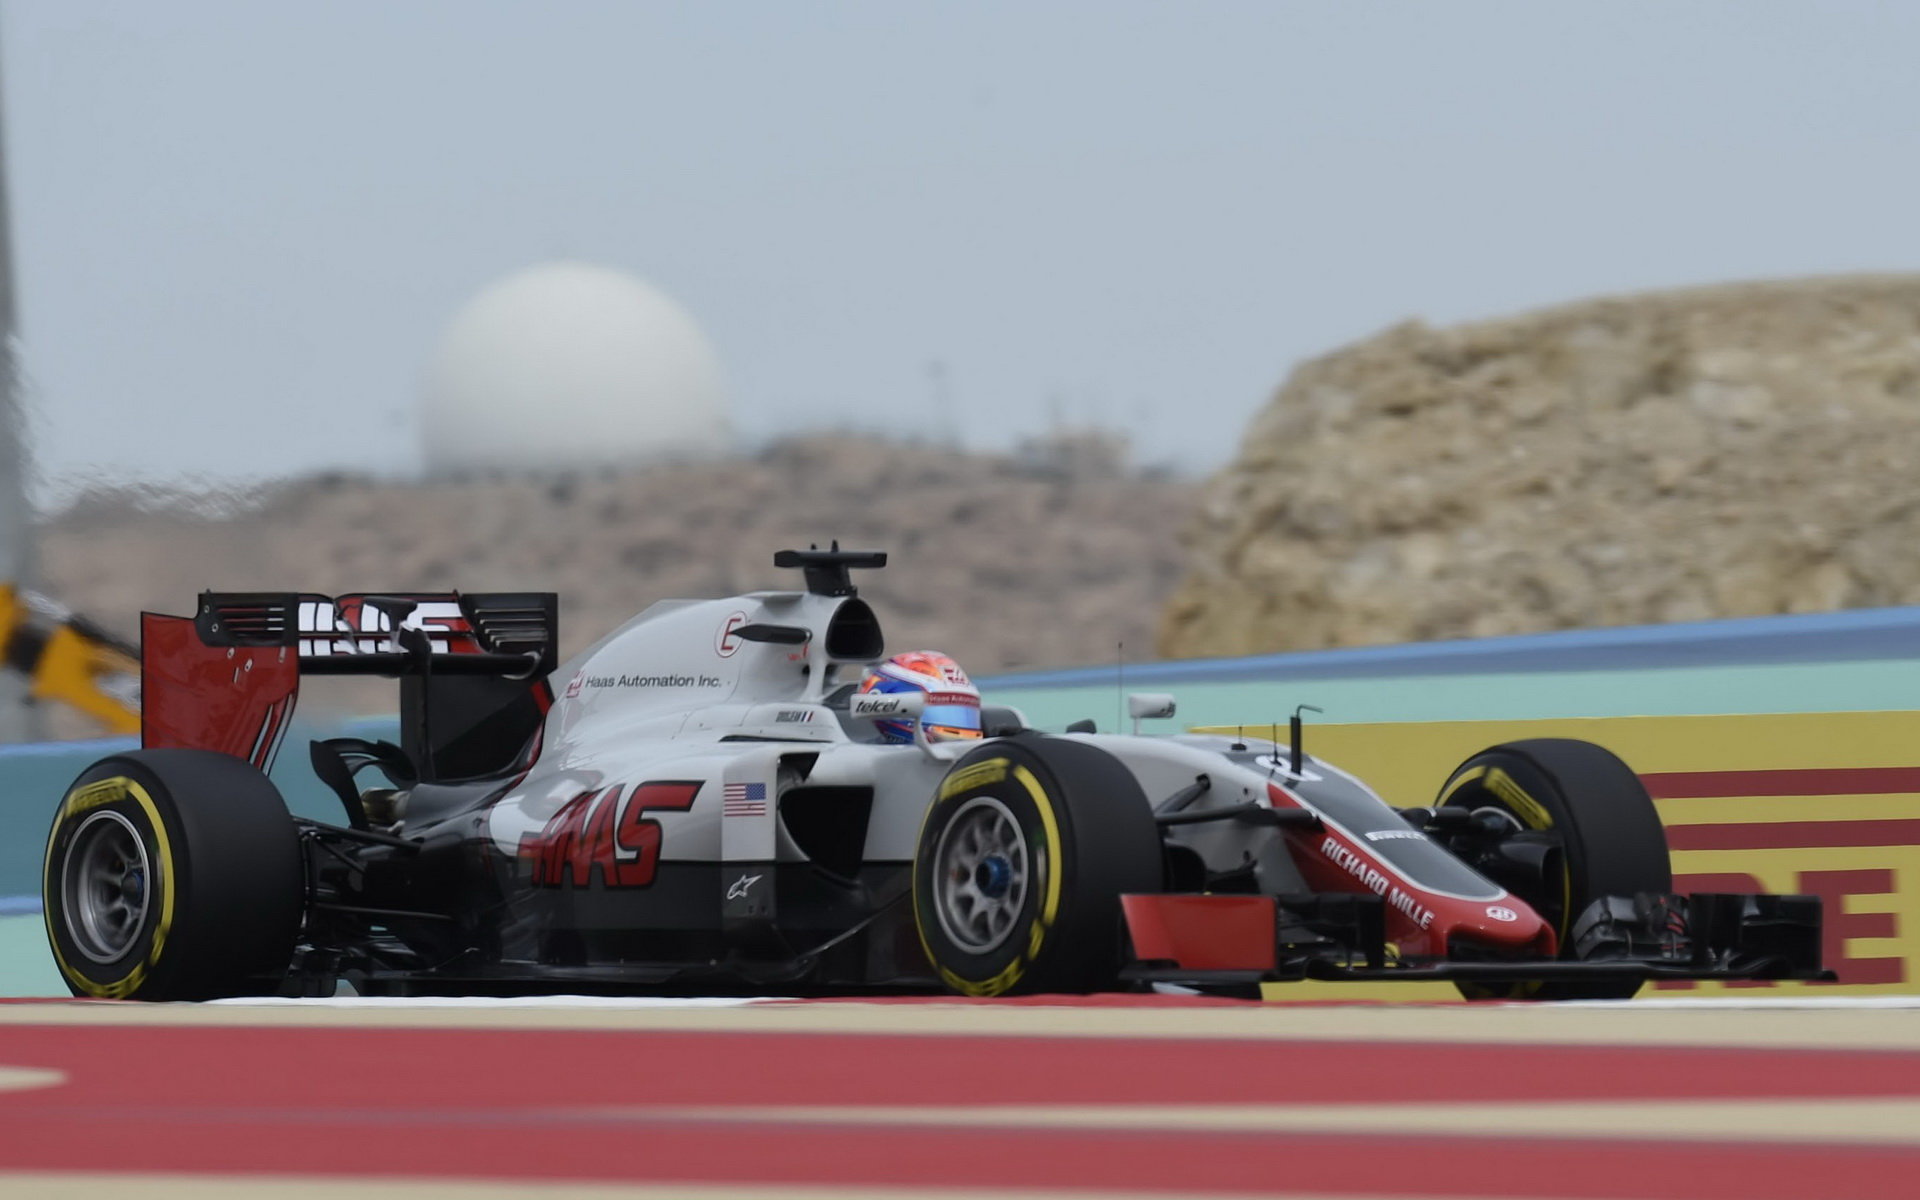 Romain Grosjean v Bahrajnu posunul nejlepší výsledek týmu opět kupředu